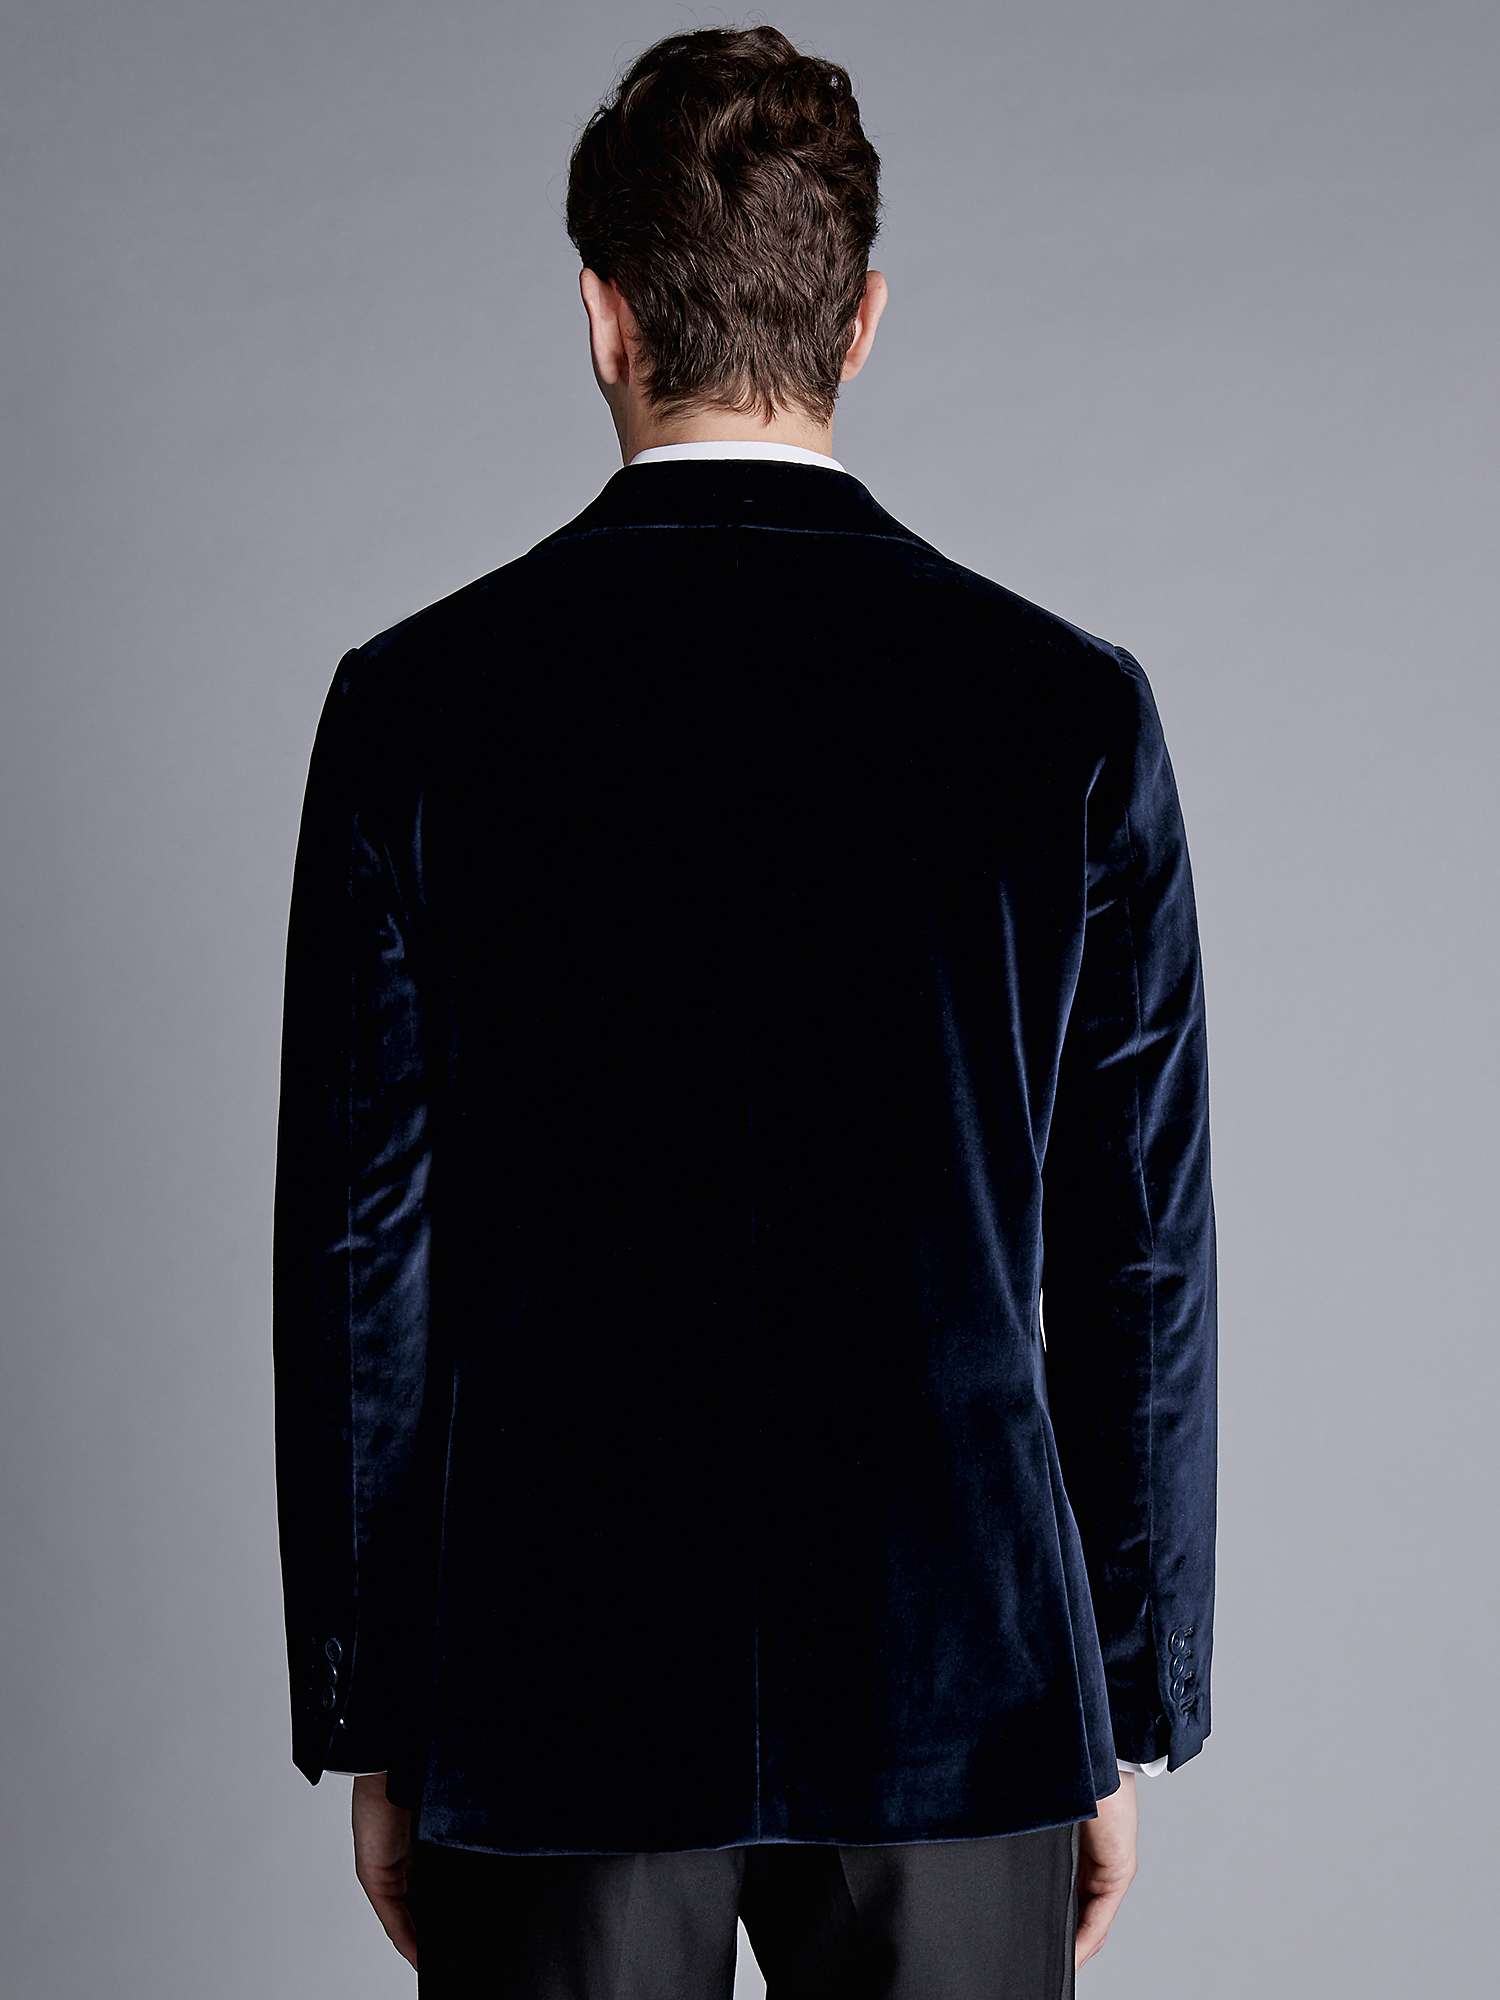 Buy Charles Tyrwhitt Slim Fit Italian Velvet Jacket Online at johnlewis.com